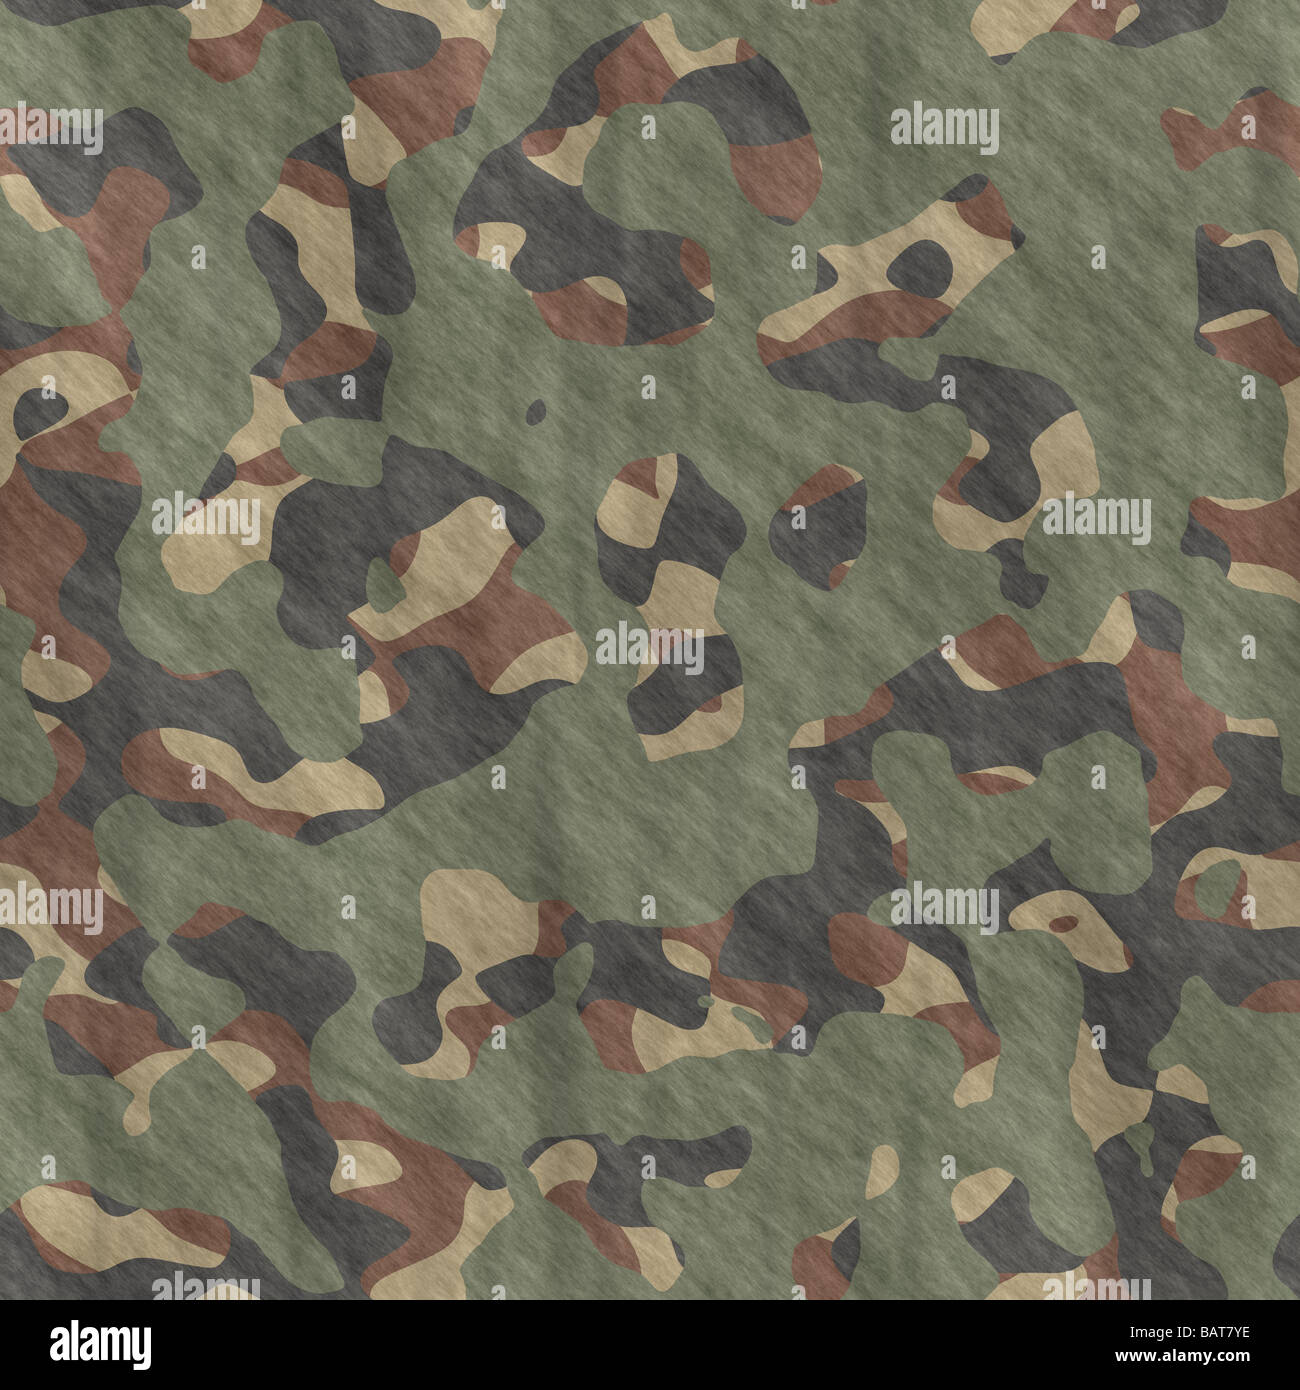 ausgezeichnetes Image Camouflage Muster Tuch oder Stoff Stockfoto